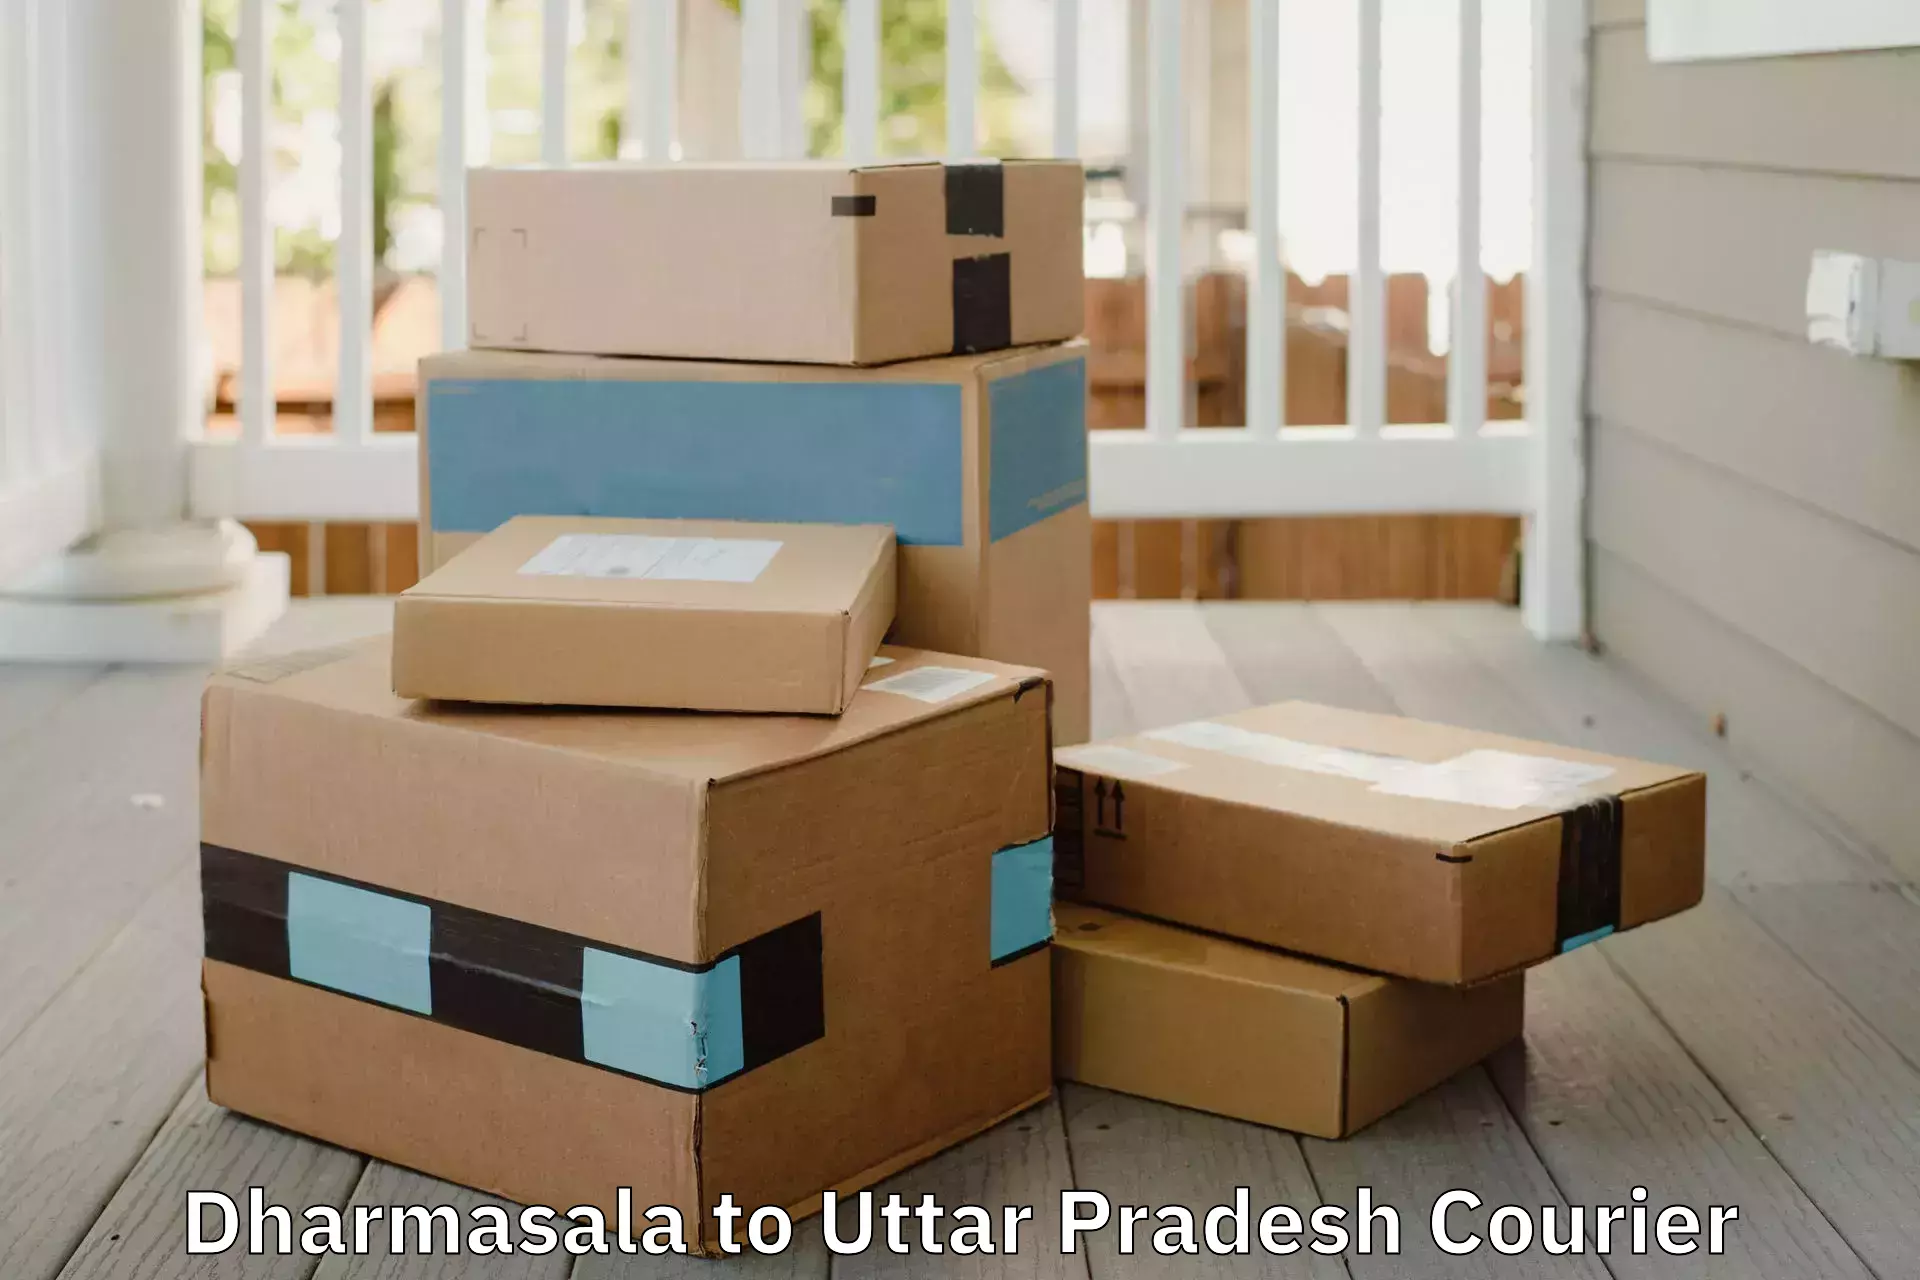 Quality furniture transport Dharmasala to Amethi